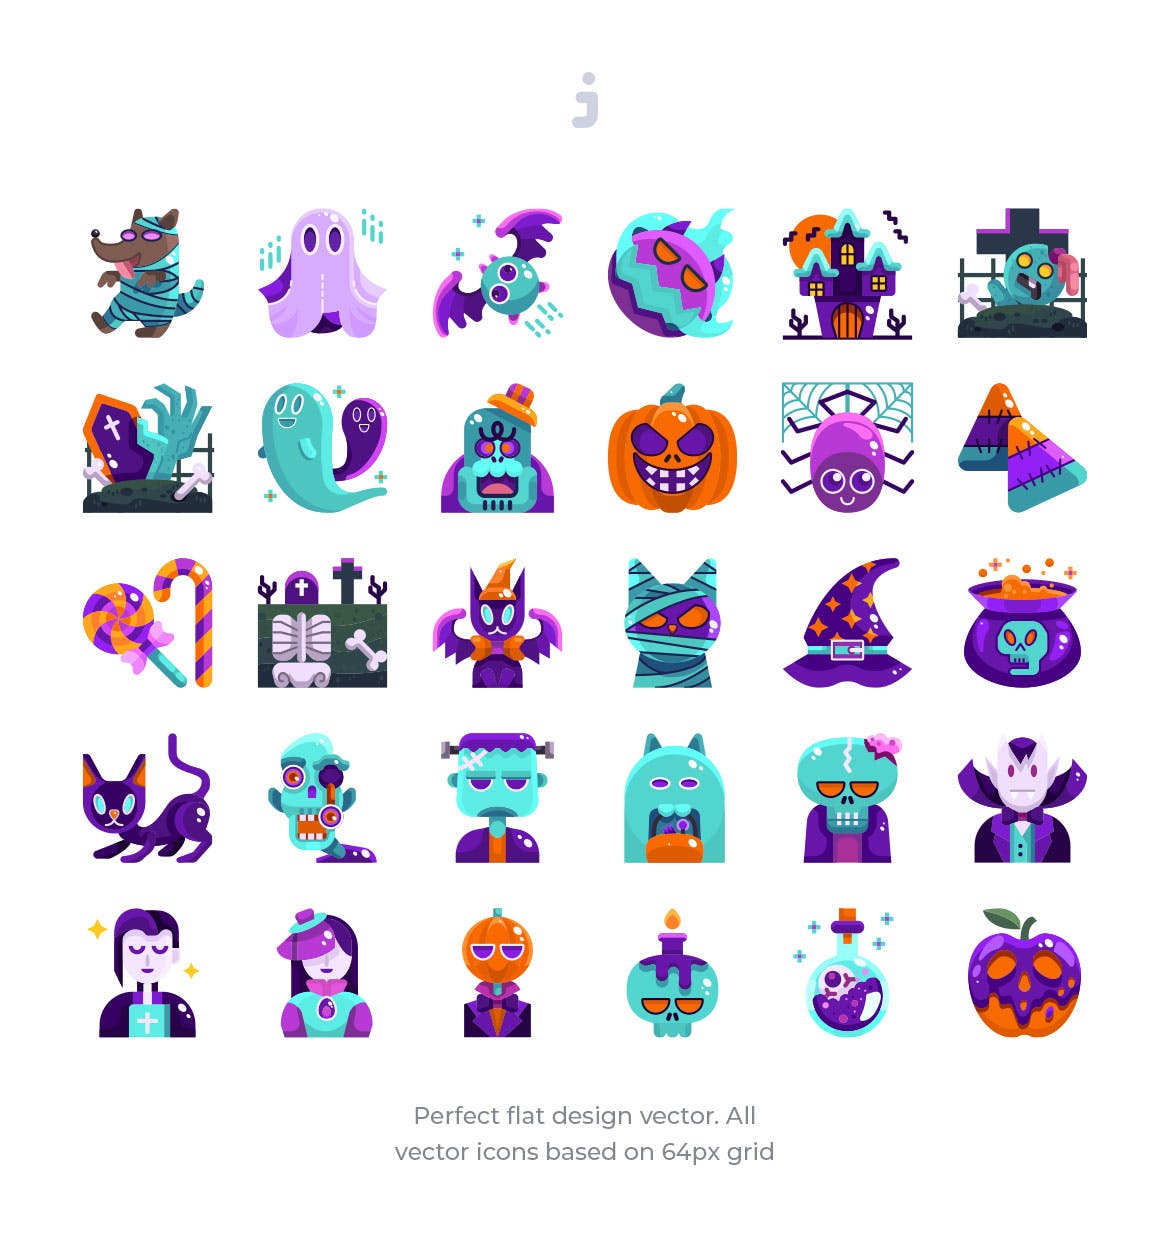 30枚扁平设计风格万圣节节日主题图标素材 30 Halloween Icons – Flat插图(1)